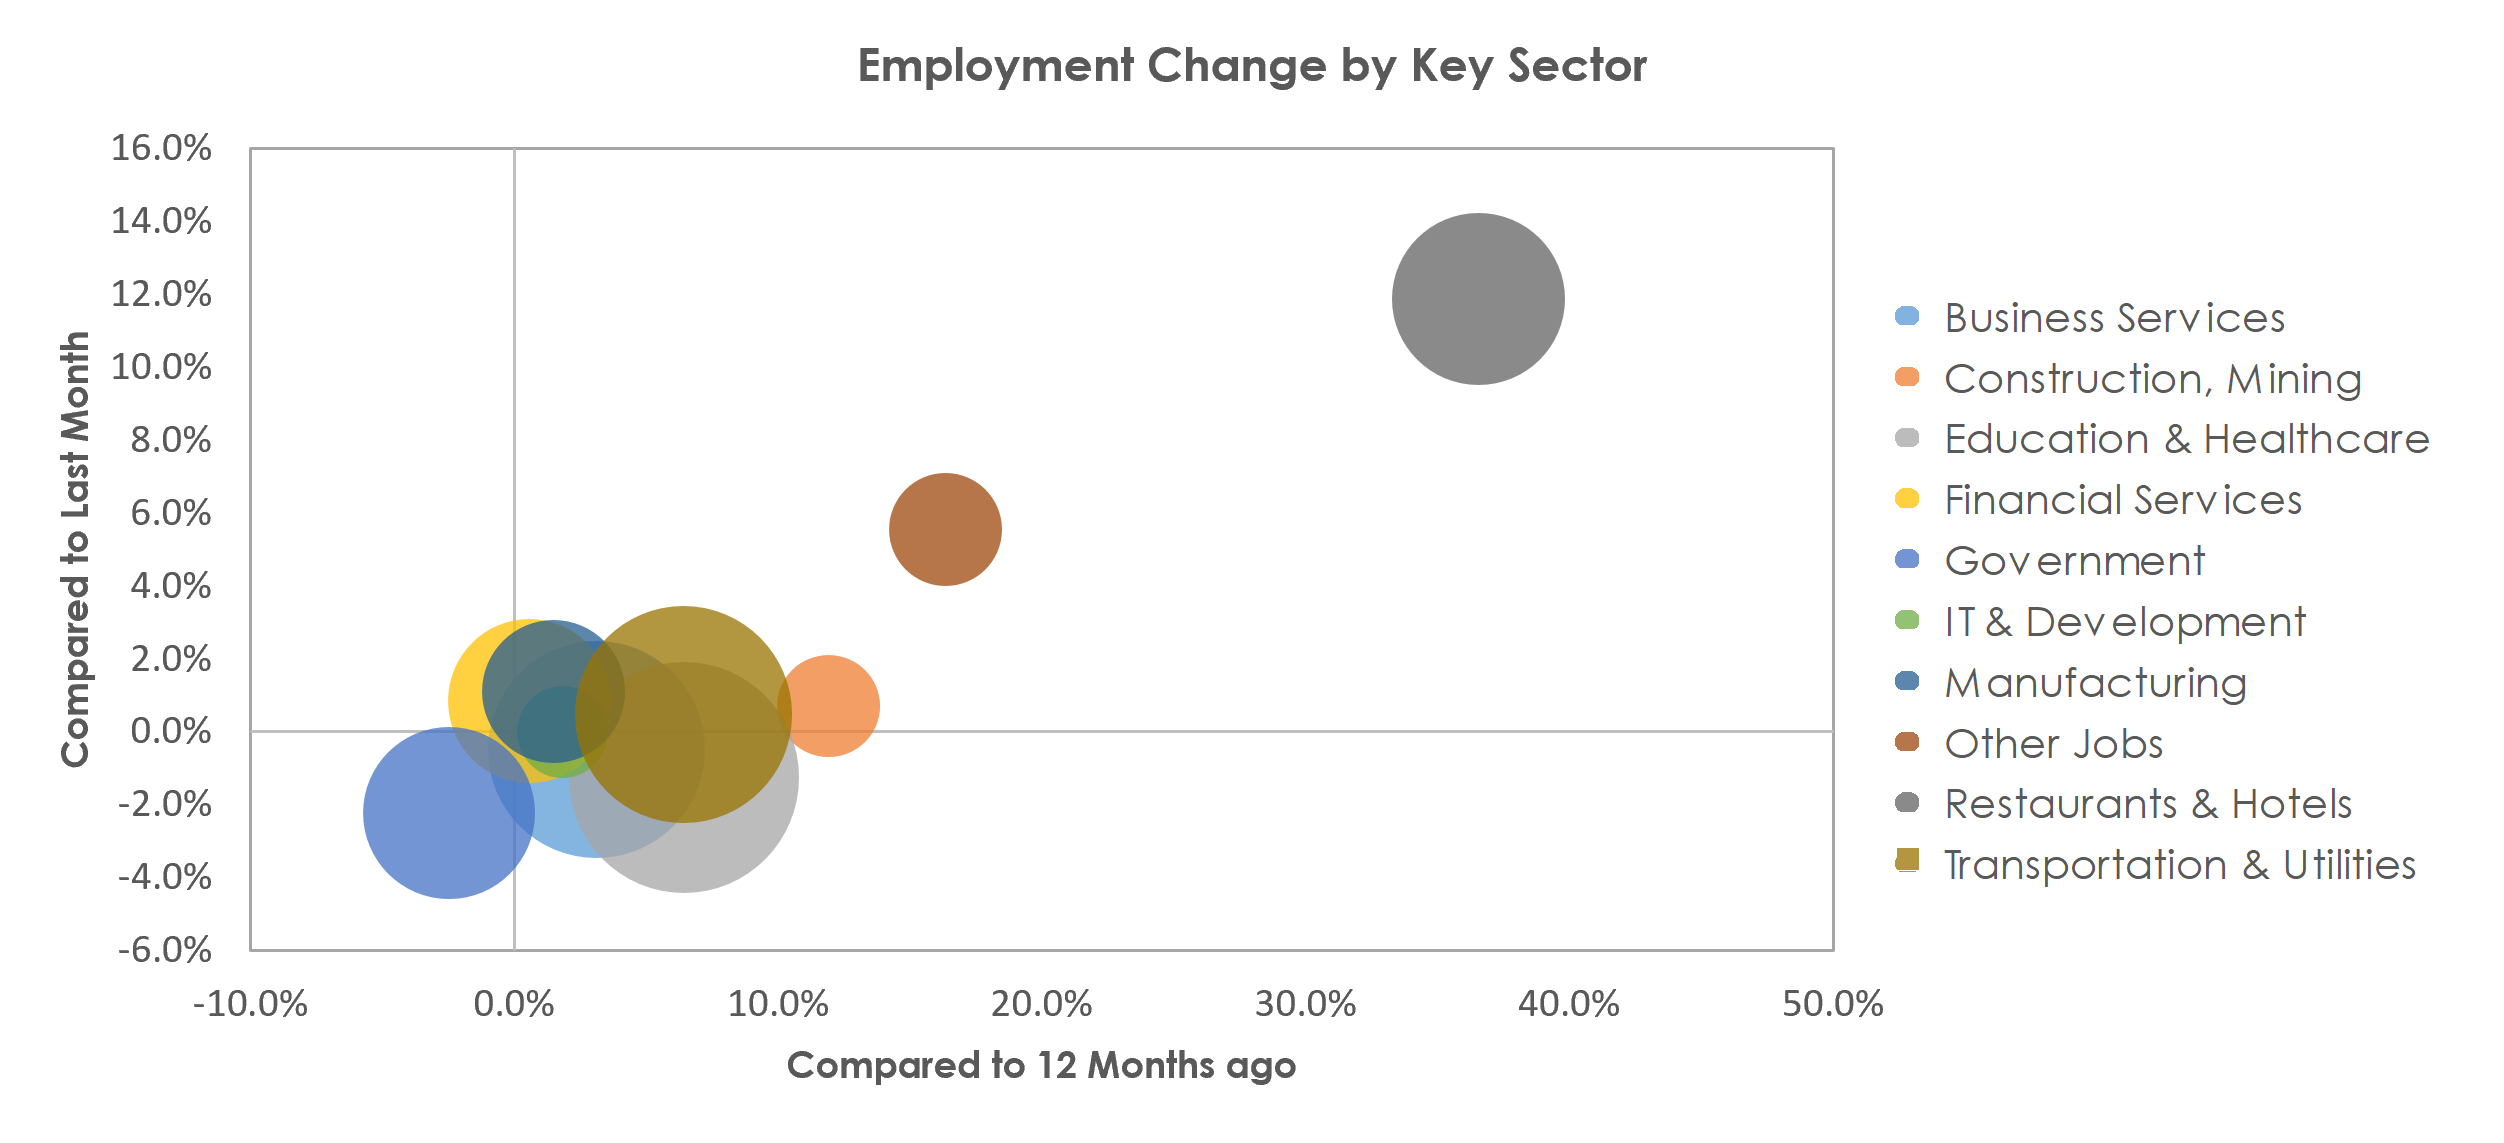 Bridgeport-Stamford-Norwalk, CT Unemployment by Industry June 2021